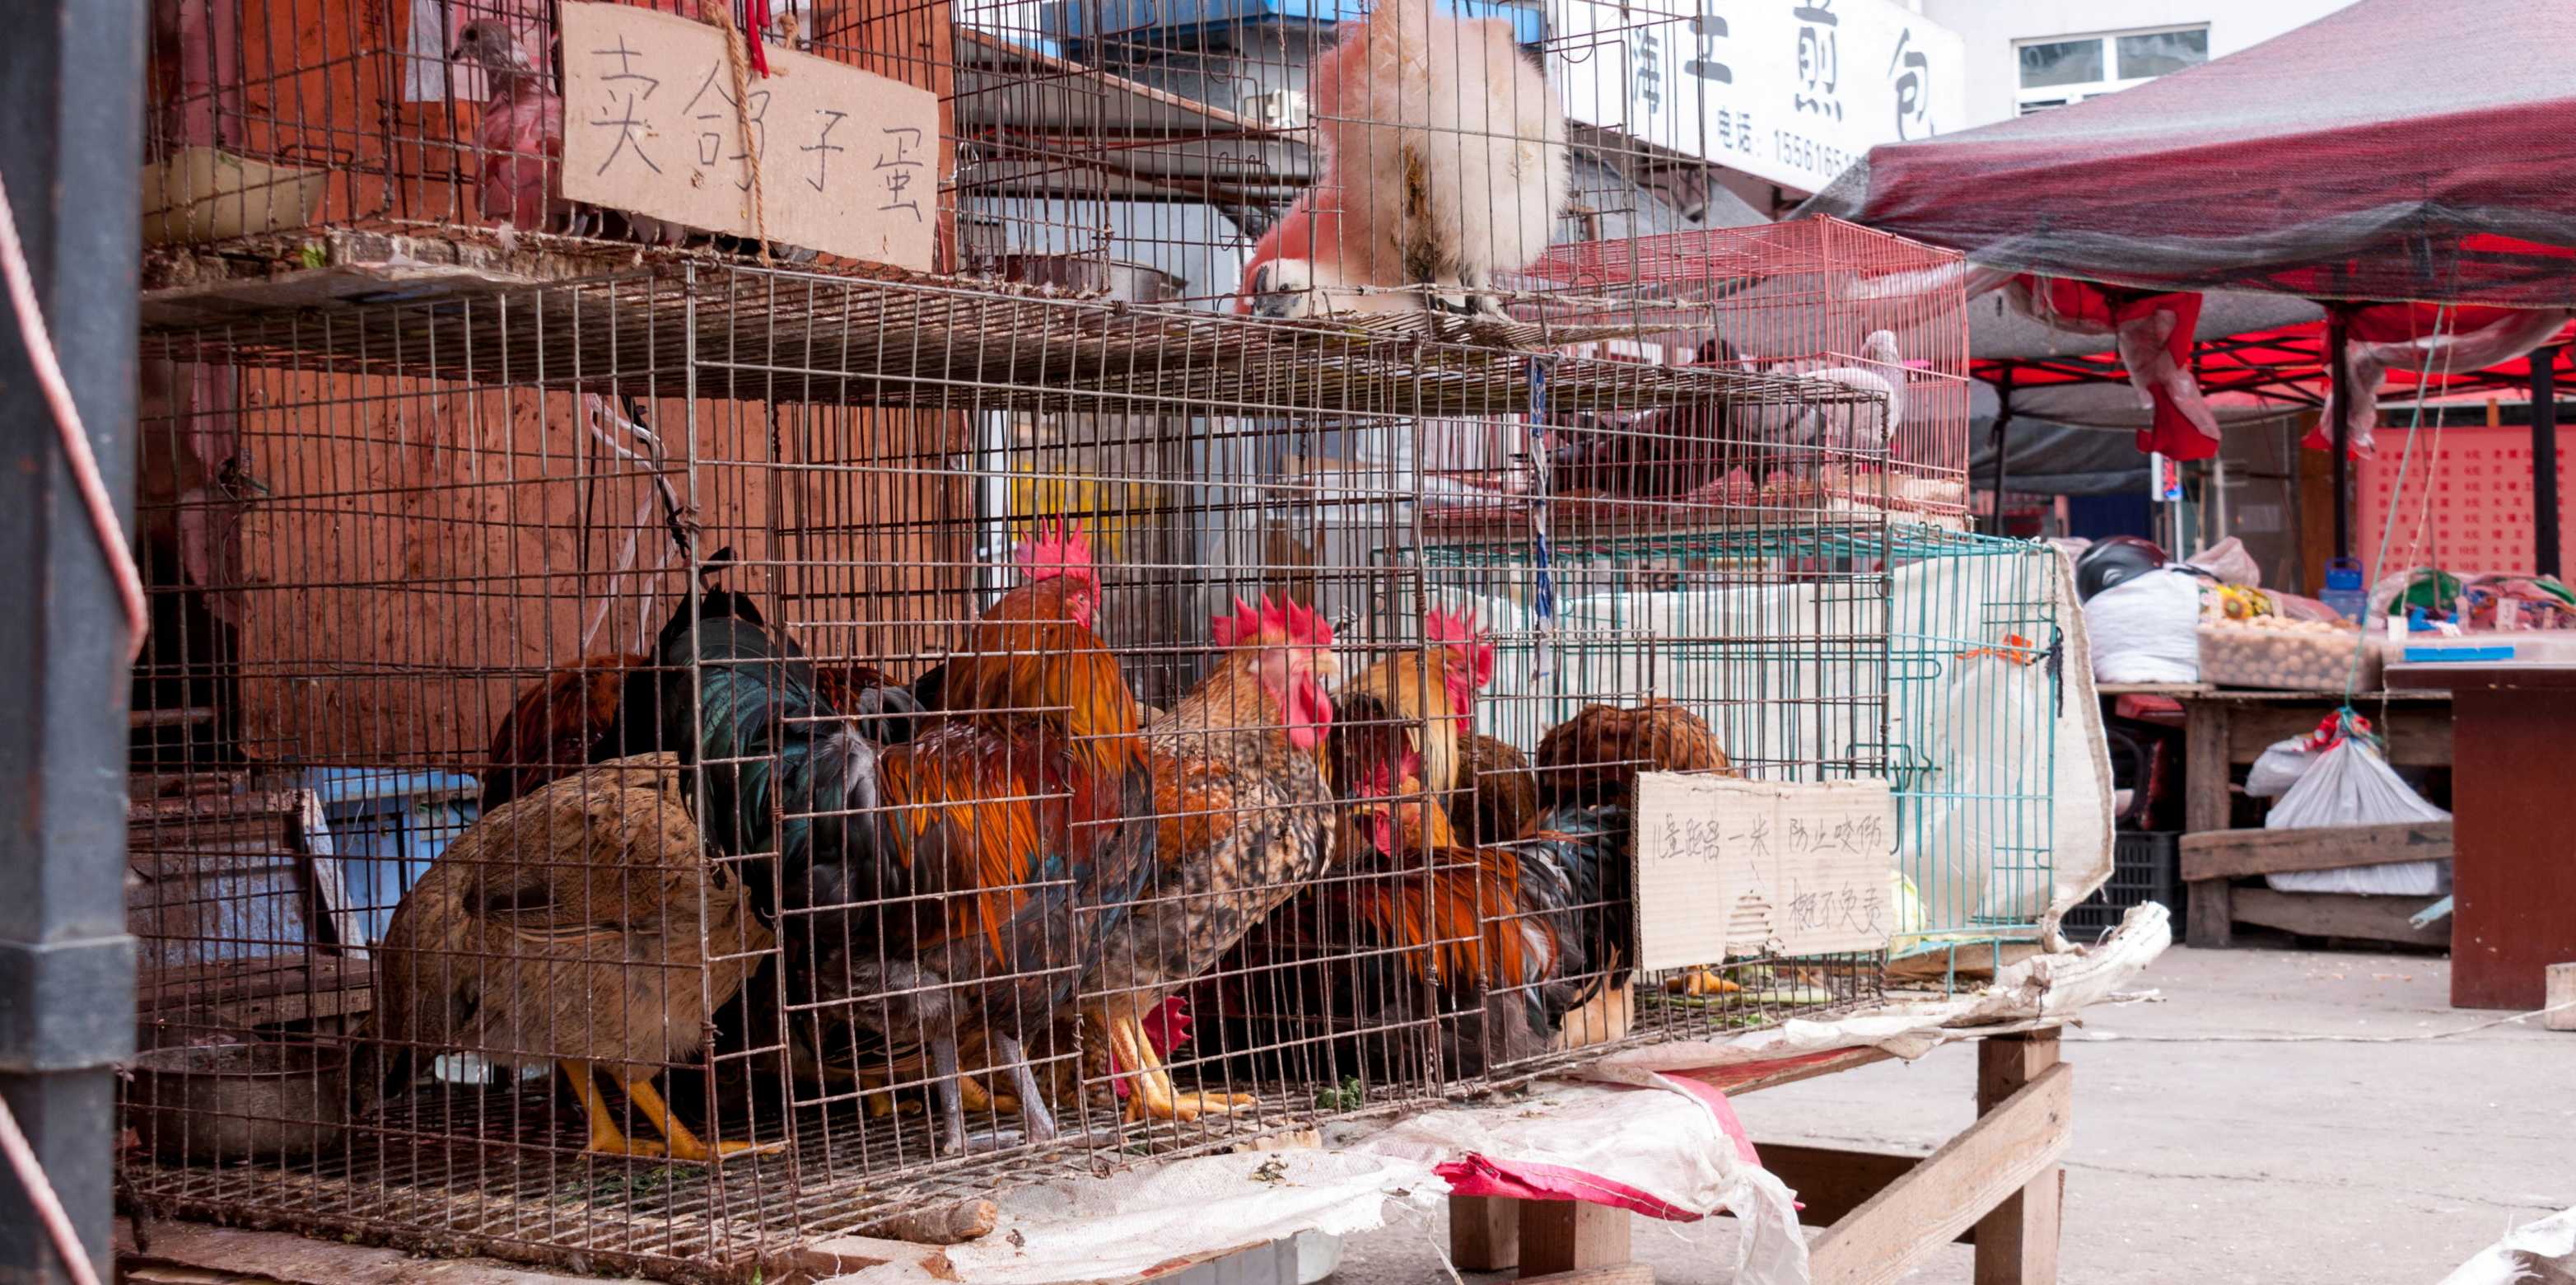 Bild von einem Markt in China, bei dem Hühner eng eingepfärcht ein Käfigen sitzen.